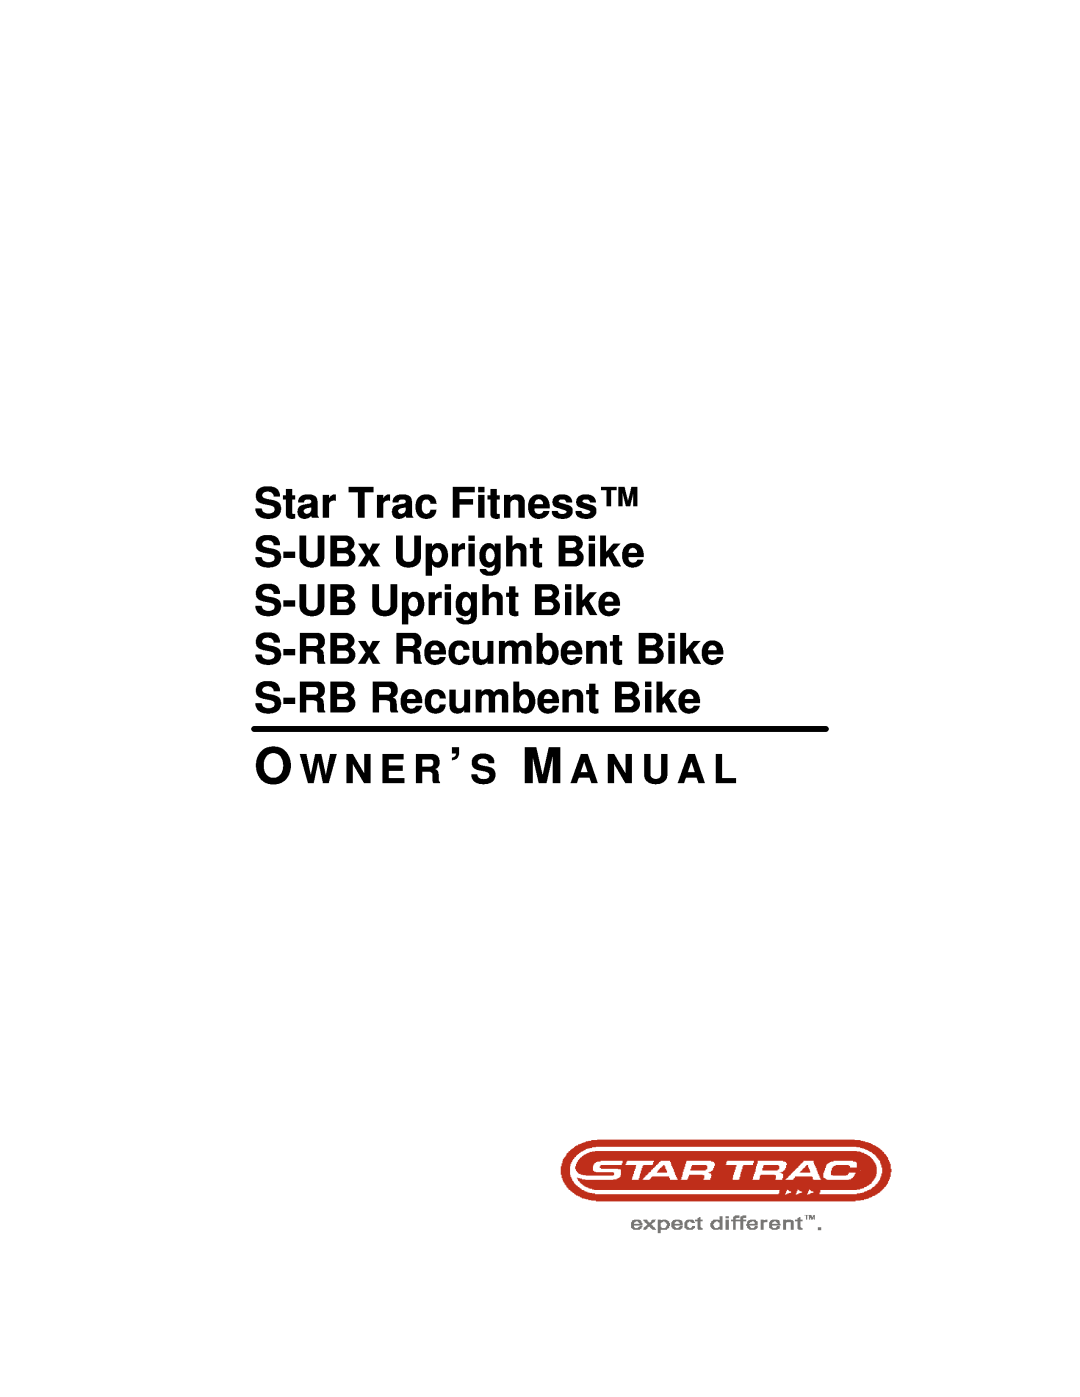 Star Trac S-RB RECUMBENT BIKE manual Star Trac Fitness S-UBx Upright Bike S-UB Upright Bike, O W N E R ’ S M A N U A L 